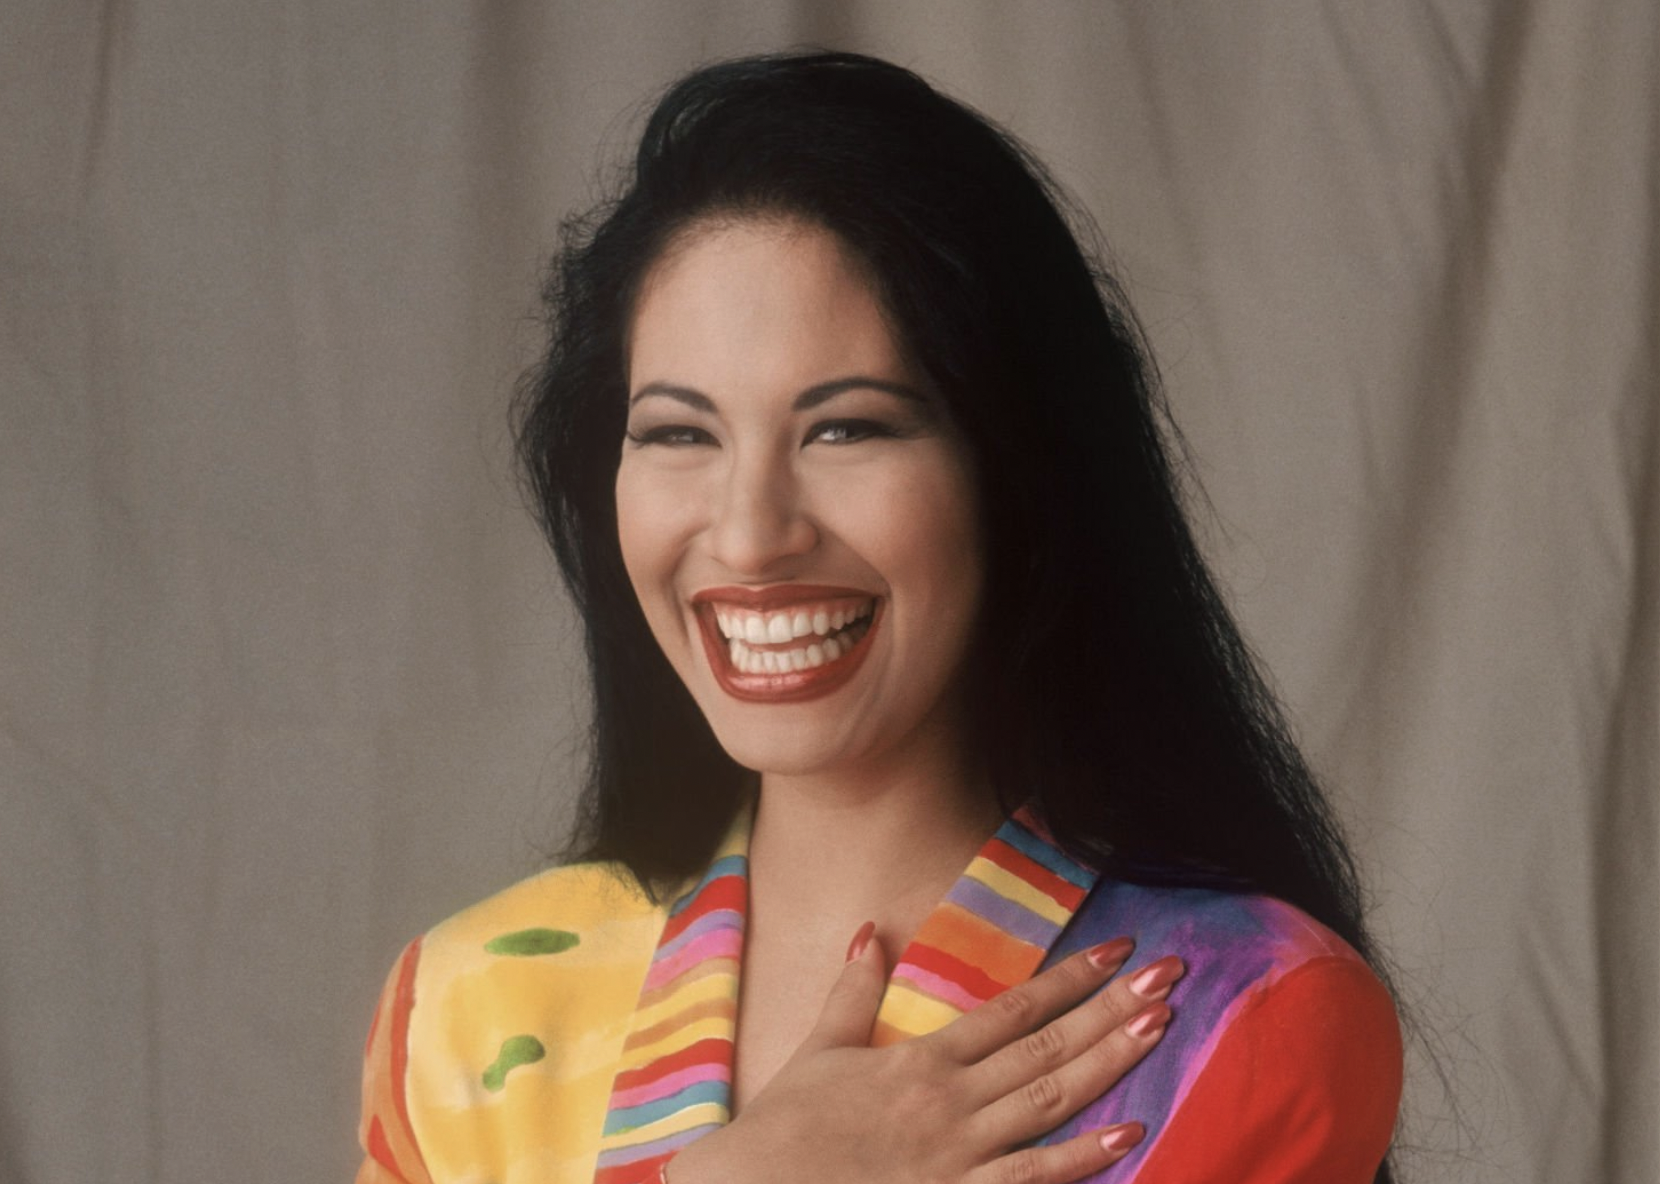 Selena Quintanilla-Pérez poses for a portrait in a studio in June 1994.